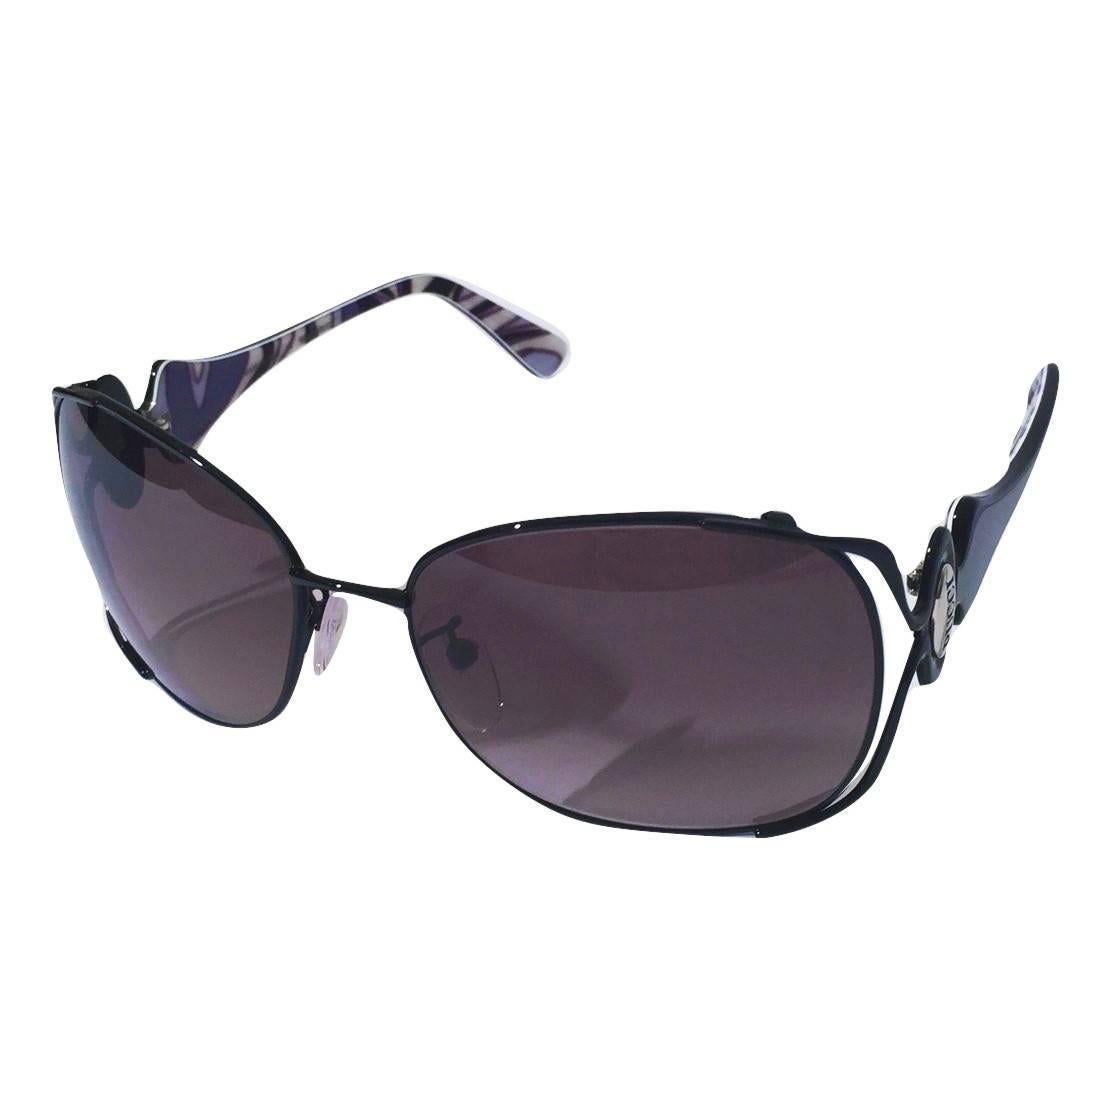 Women's New Emilio Pucci Black Aviator Sunglasses With Case & Box